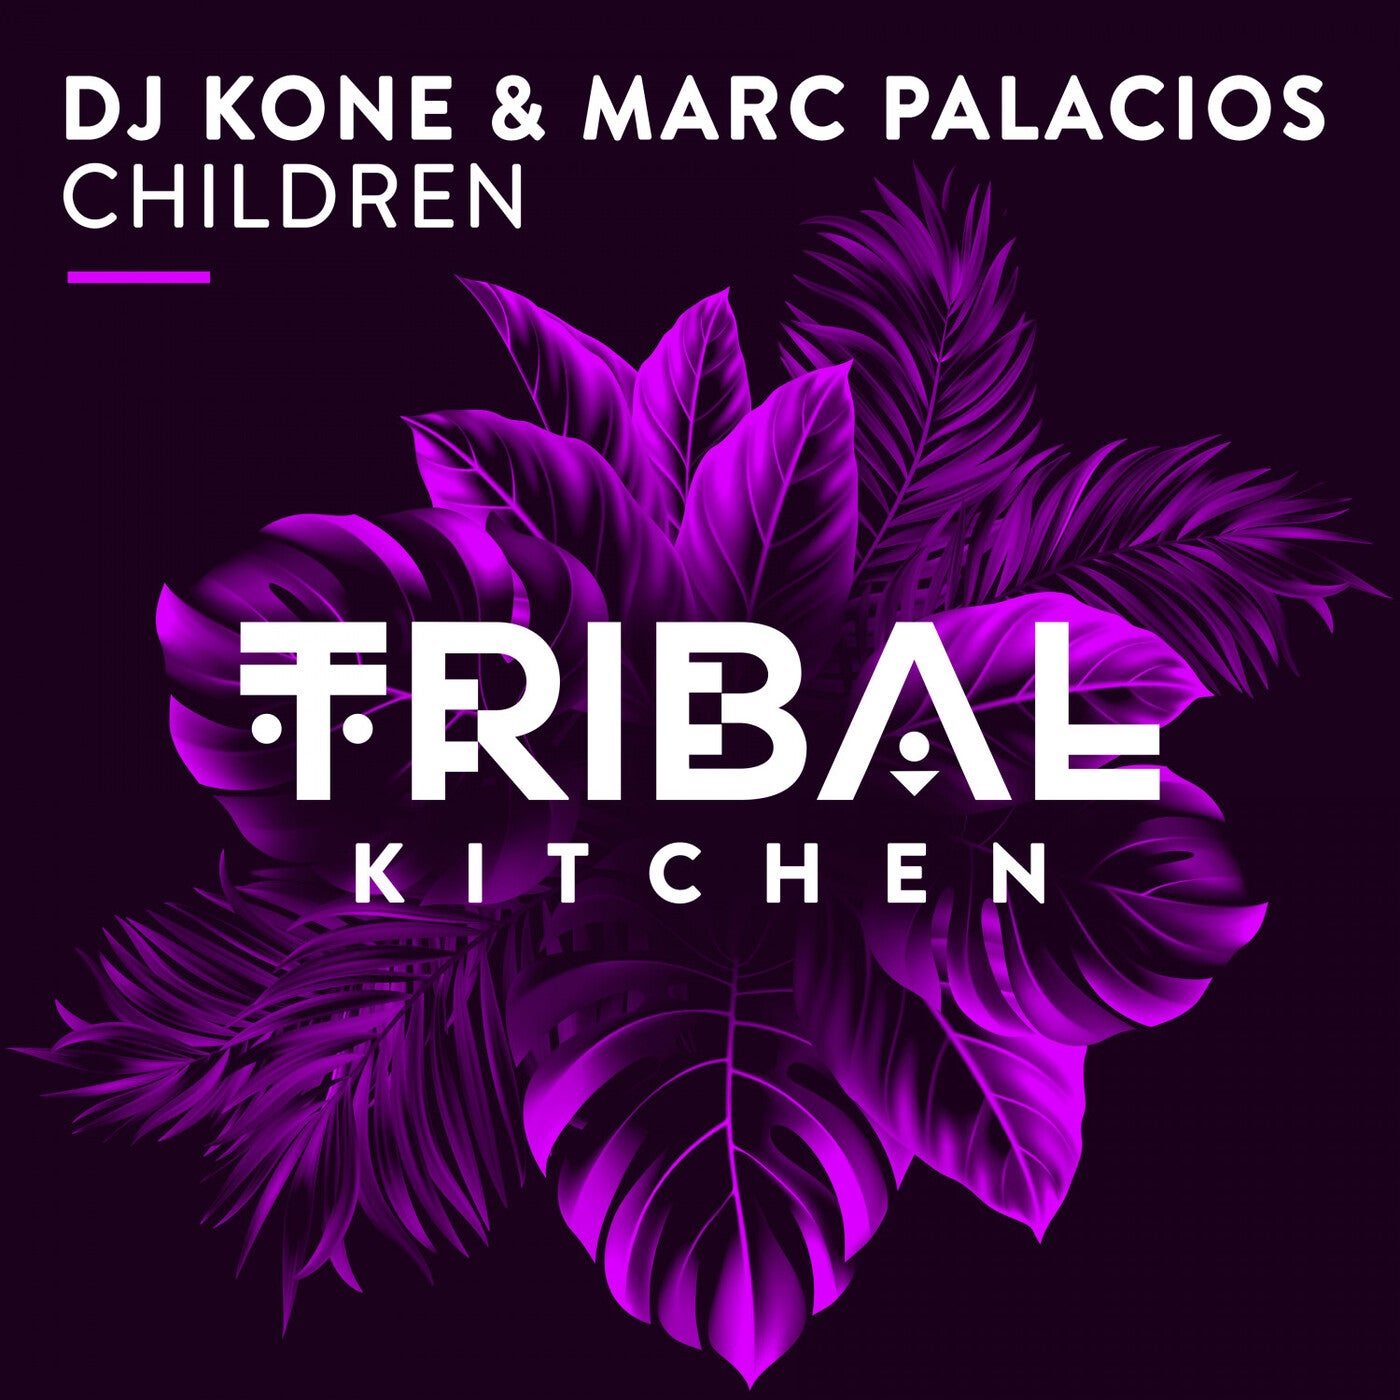 Marc Palacios, DJ Kone - Children (Original Mix)